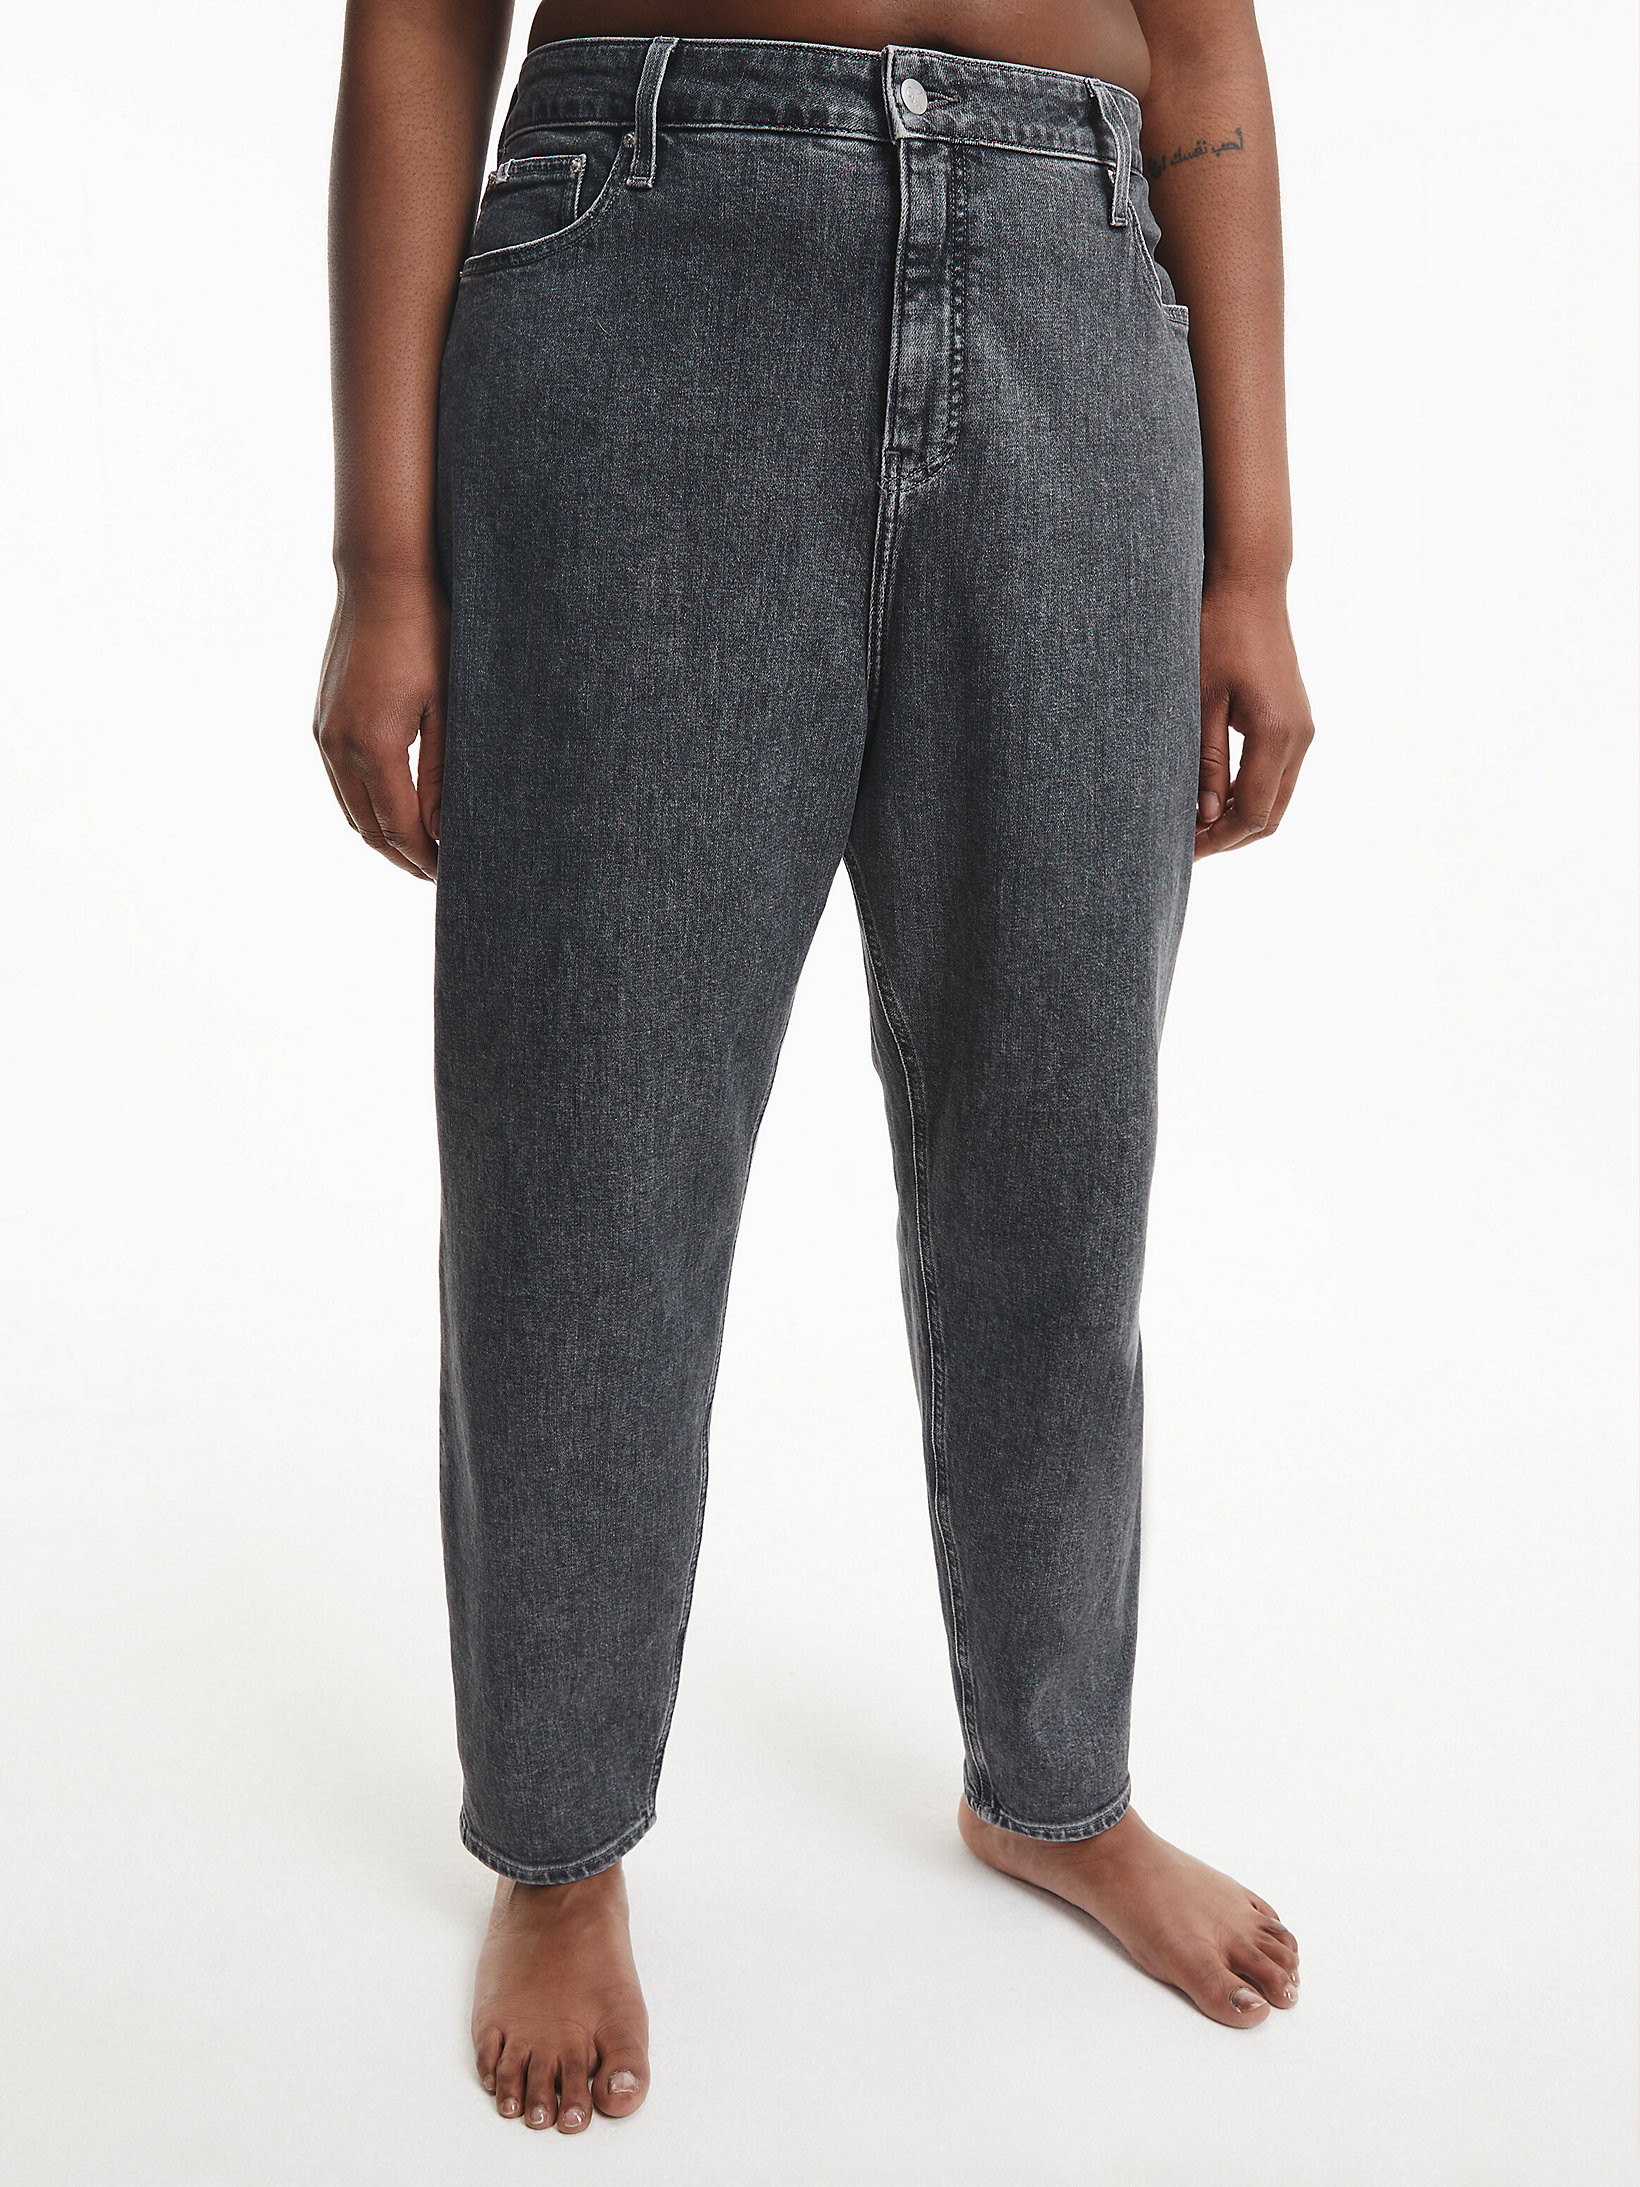 Denim Grey Plus Size Mom Jeans undefined women Calvin Klein